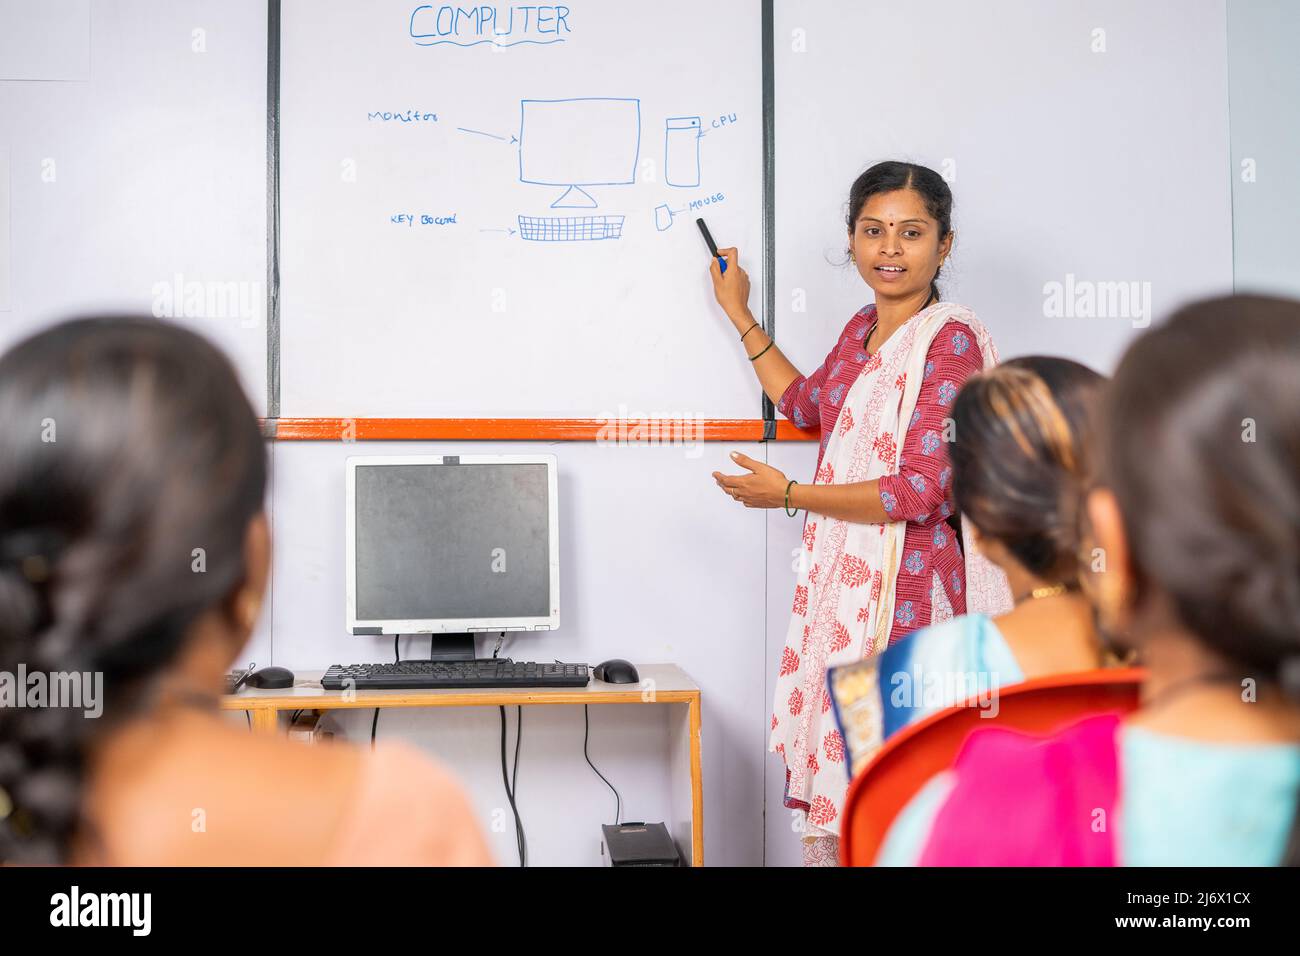 Gruppe von indischen Frauen hören Computer-Klasse von professionellen Lehrer - Konzept der Lerntechnologie, Empowerment und Gleichheit Stockfoto